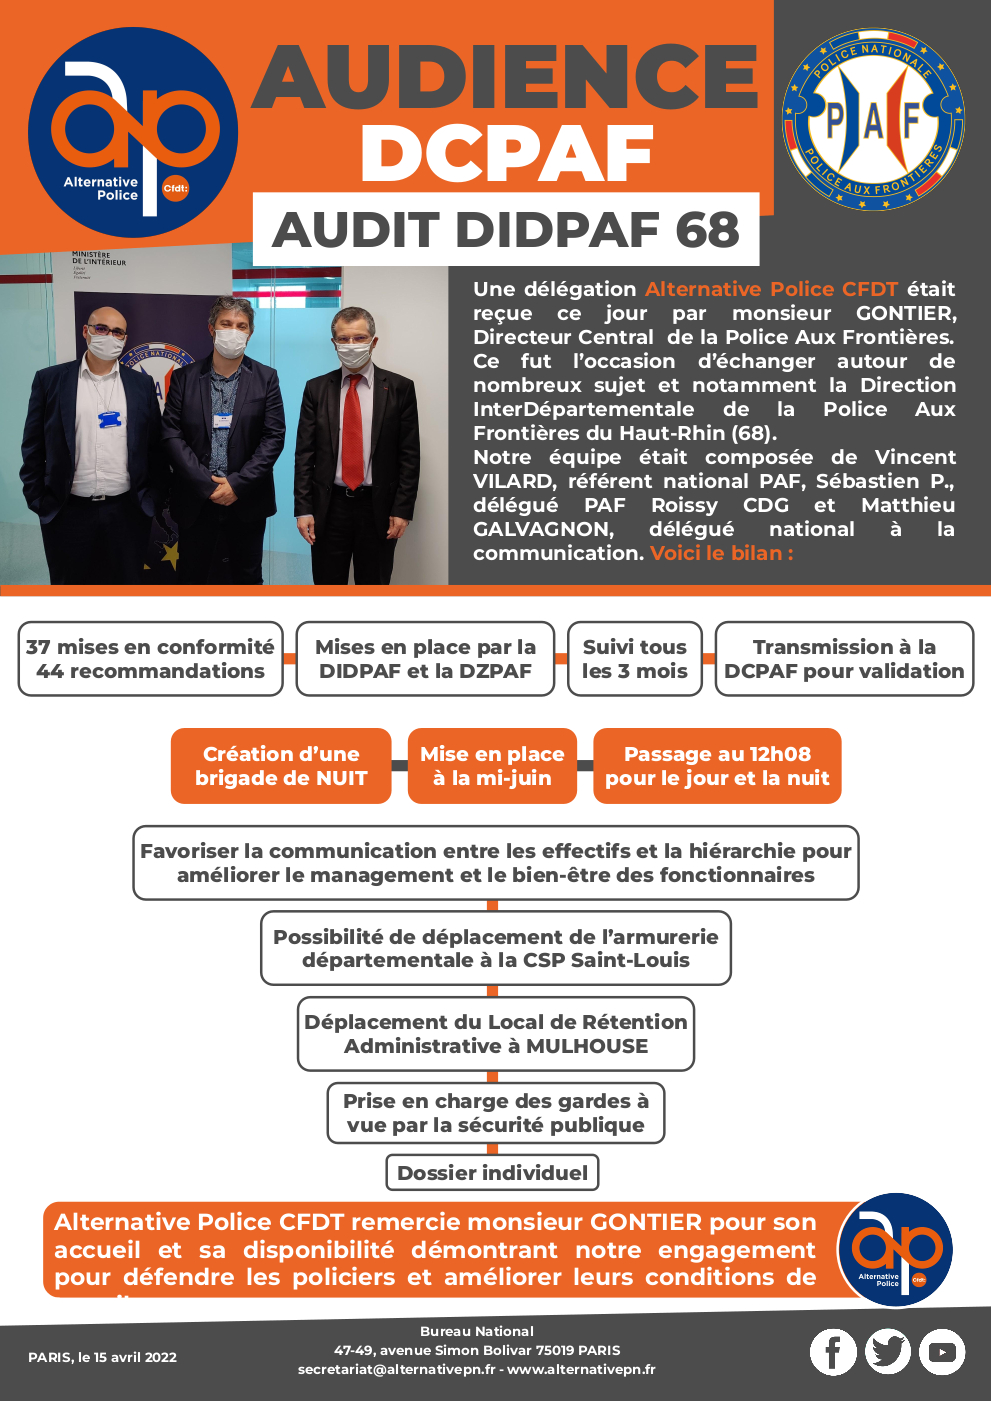 Audience DCPAF : Audit DIDPAF 68